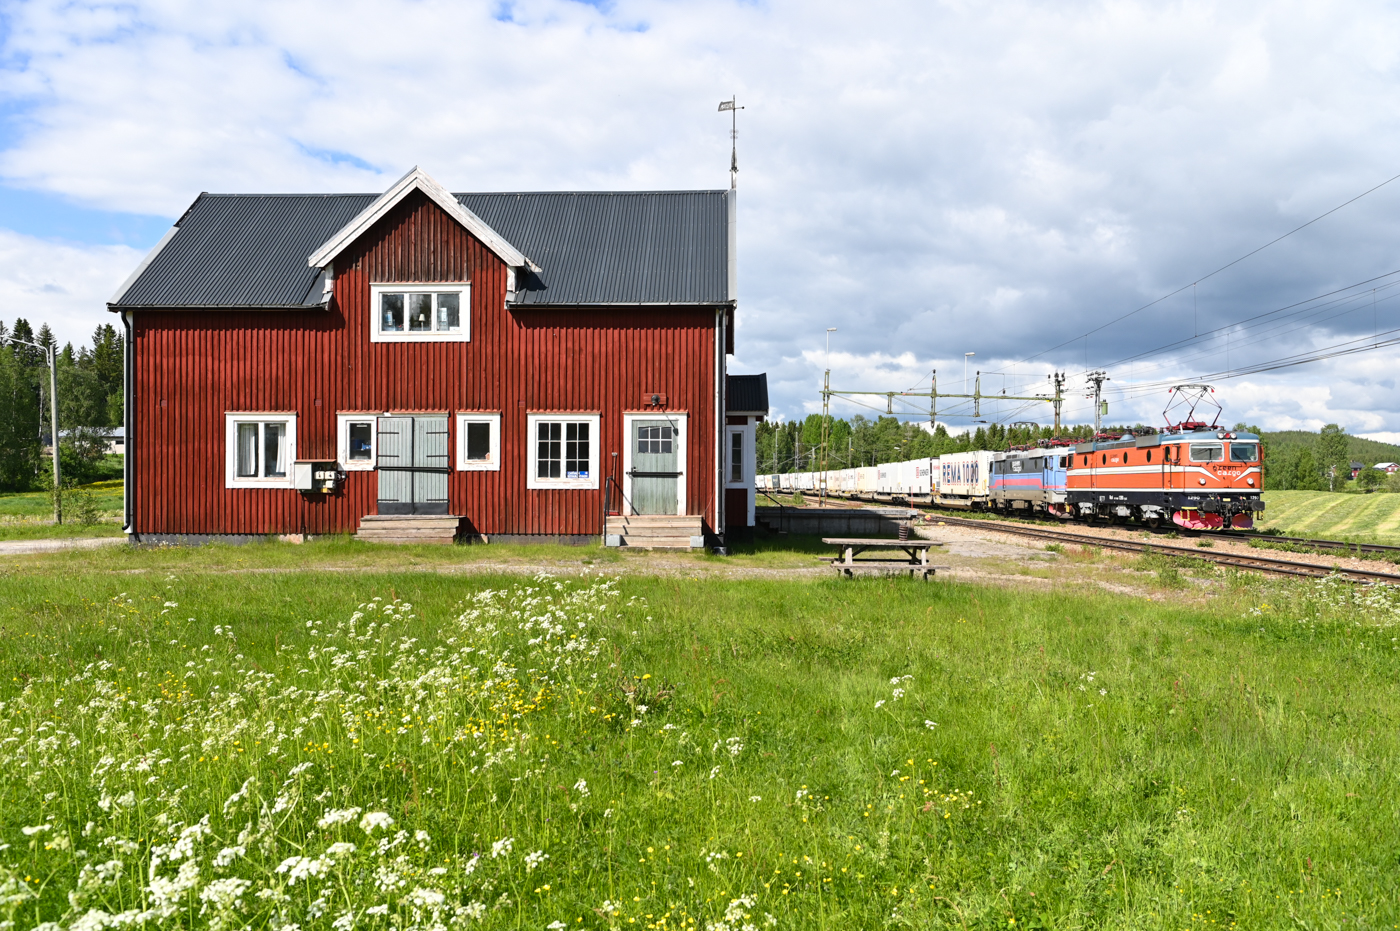 Neben dem CargoNet ARE ist auch der North Rail Express (NRE) von Narvik nach Oslo unterwegs. Er wird von  Green Cargo betrieben. Am 16.06.2022 folgt der NRE dem ARE bei Björnsjö nach Norden. Als wäre die CargoNet El16 an dem Tag noch nicht genug, ist am NRE ein weiterer Augenschmaus zu sehen. Statt grüner Re ist der NRE an diesem Tag mit zwei Rc4 bespannt. Rc4 Nr.1162 in der alten blauen Lackierung und an der Spitze zieht Rc4 Nr.1290 im historischen orangenen Farbkleid. 